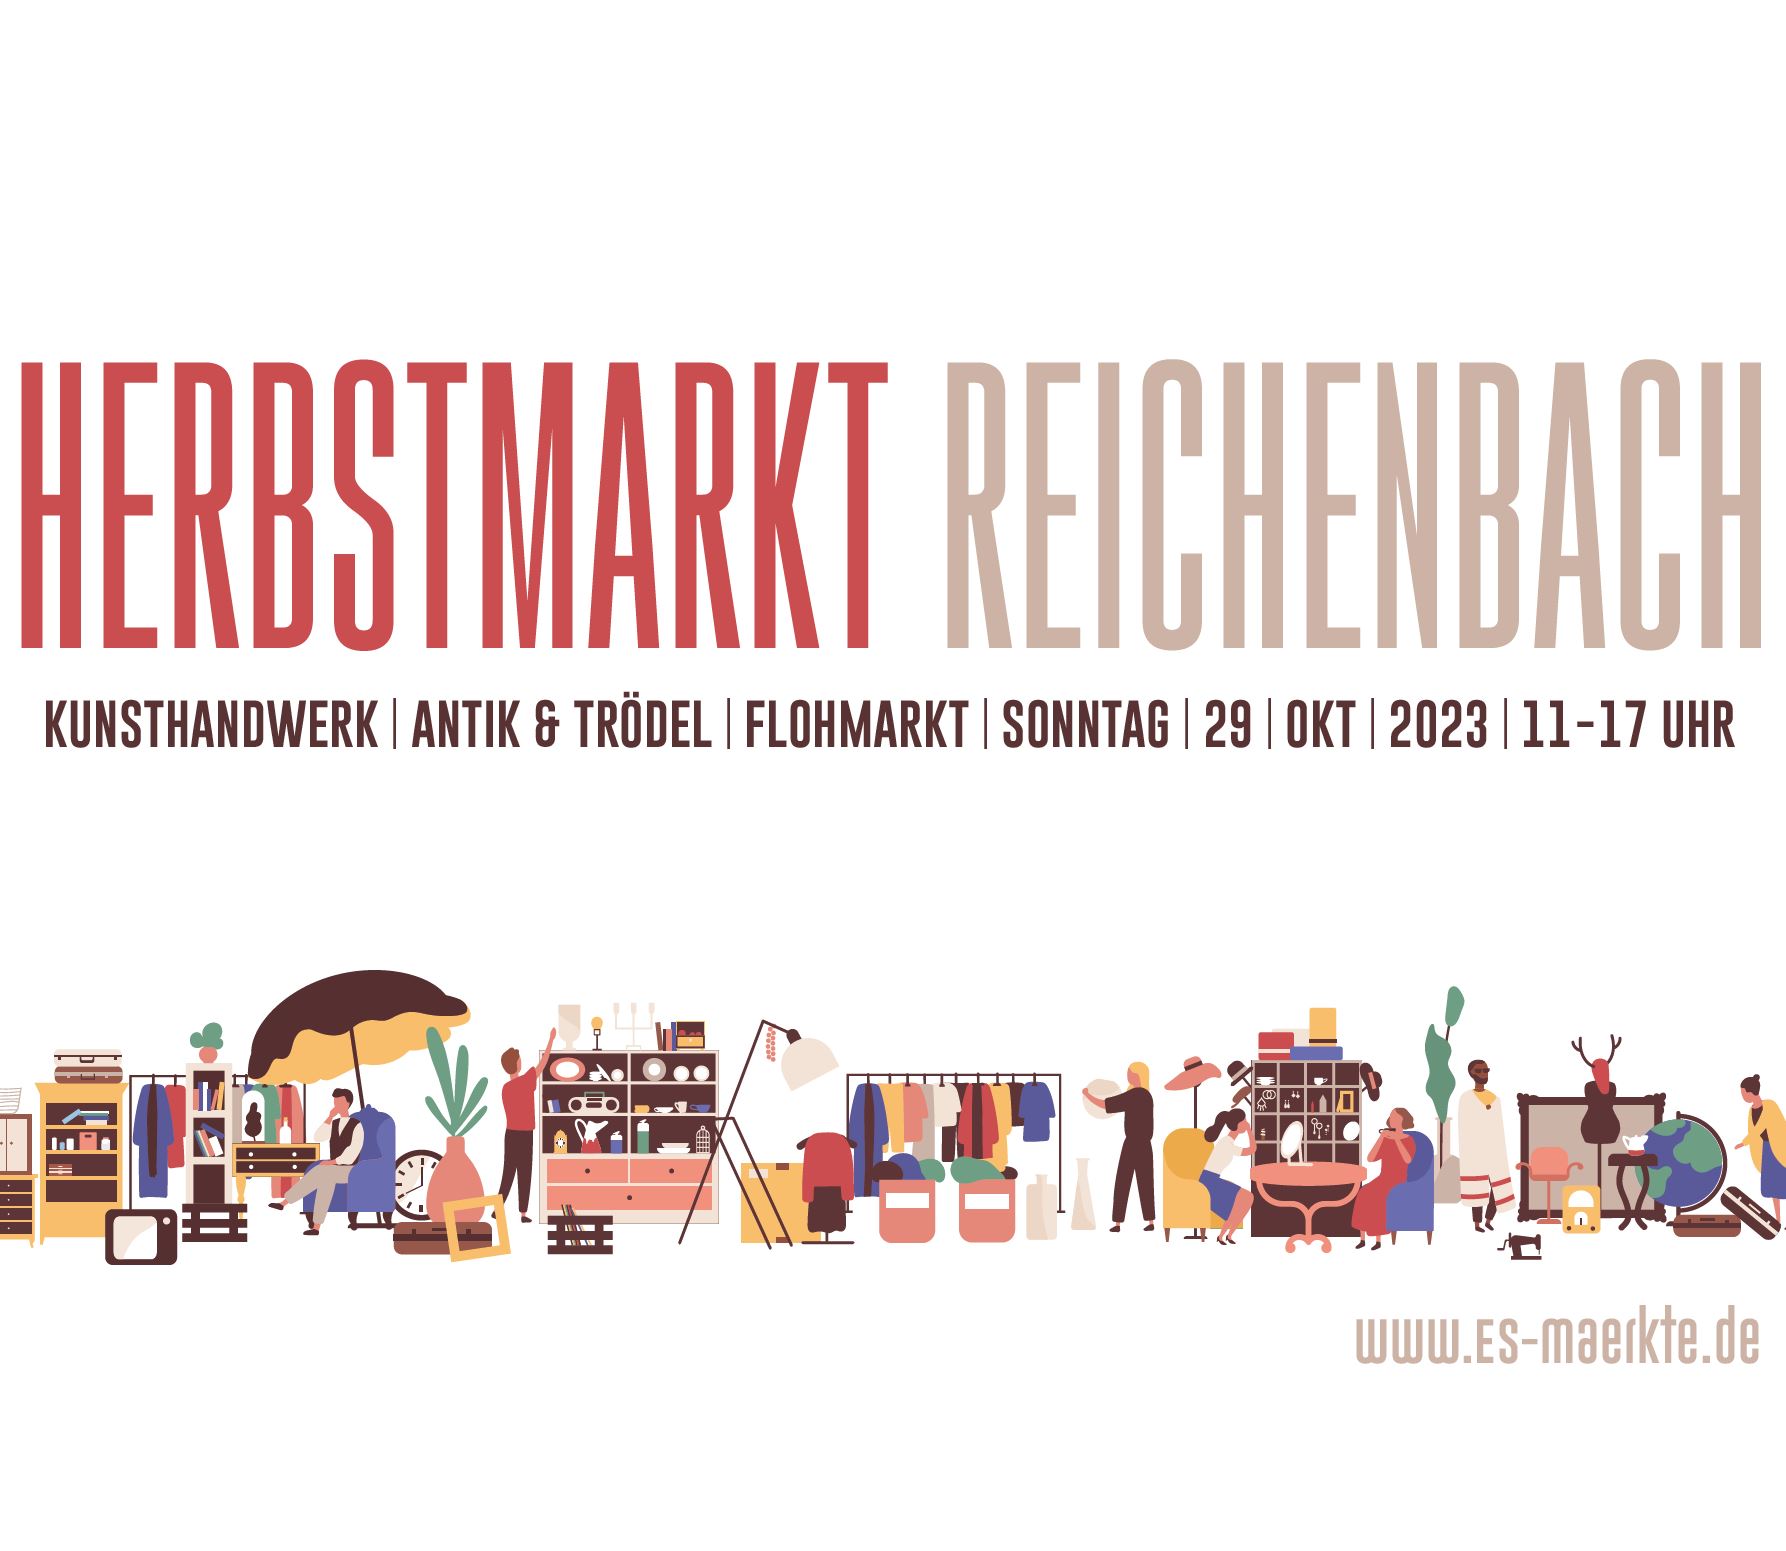 Besucht uns am Sonntag den 29.10 in Reichenbach beim Herbstmarkt